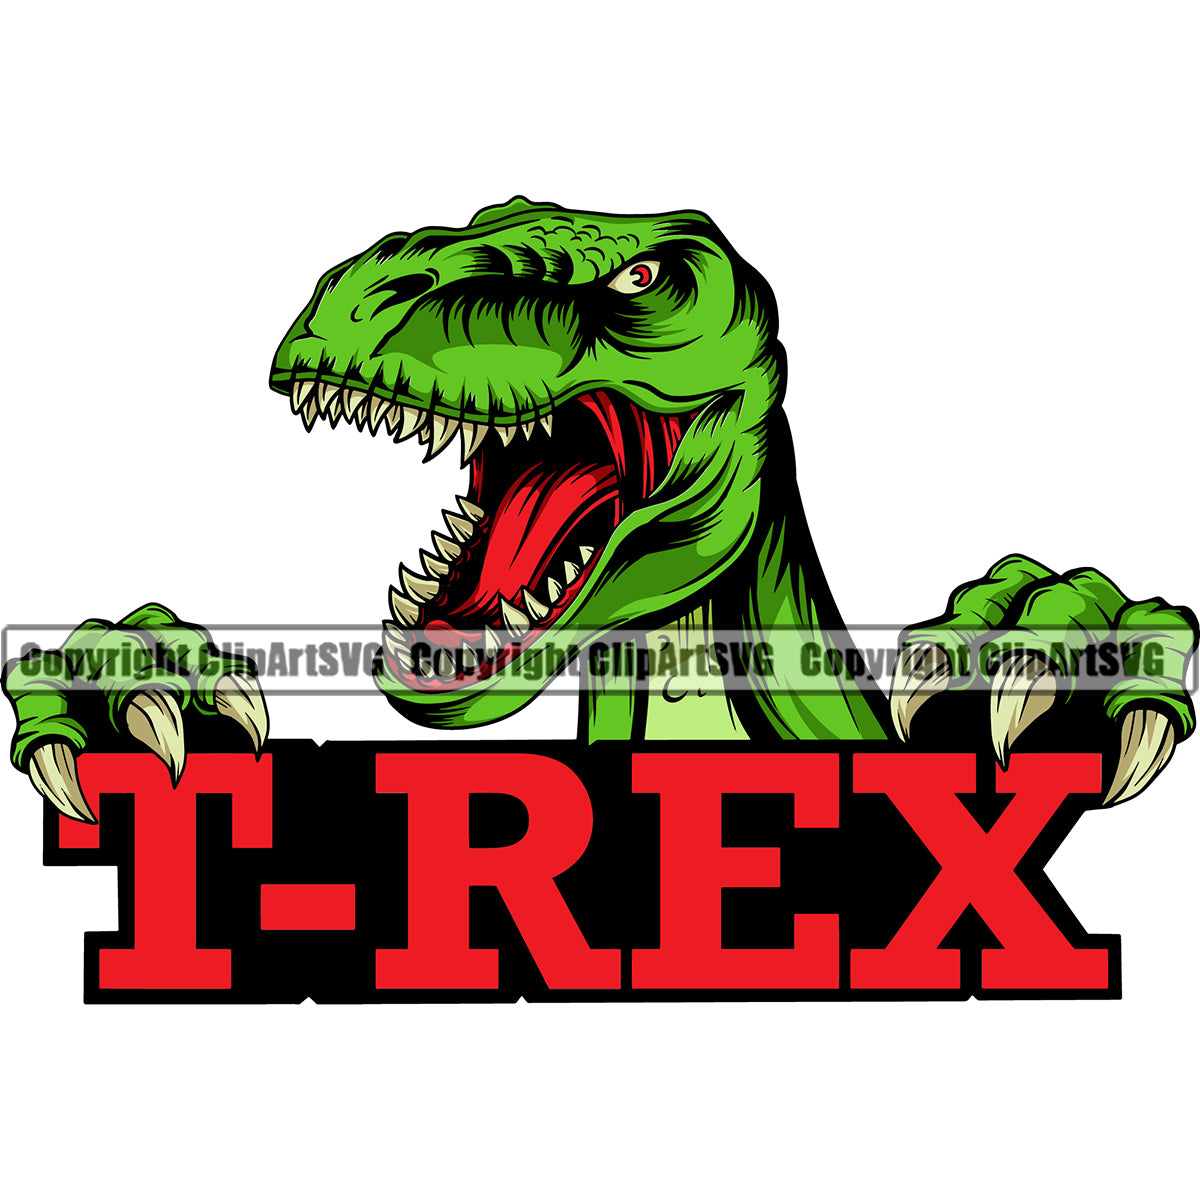 red dinosaur logo